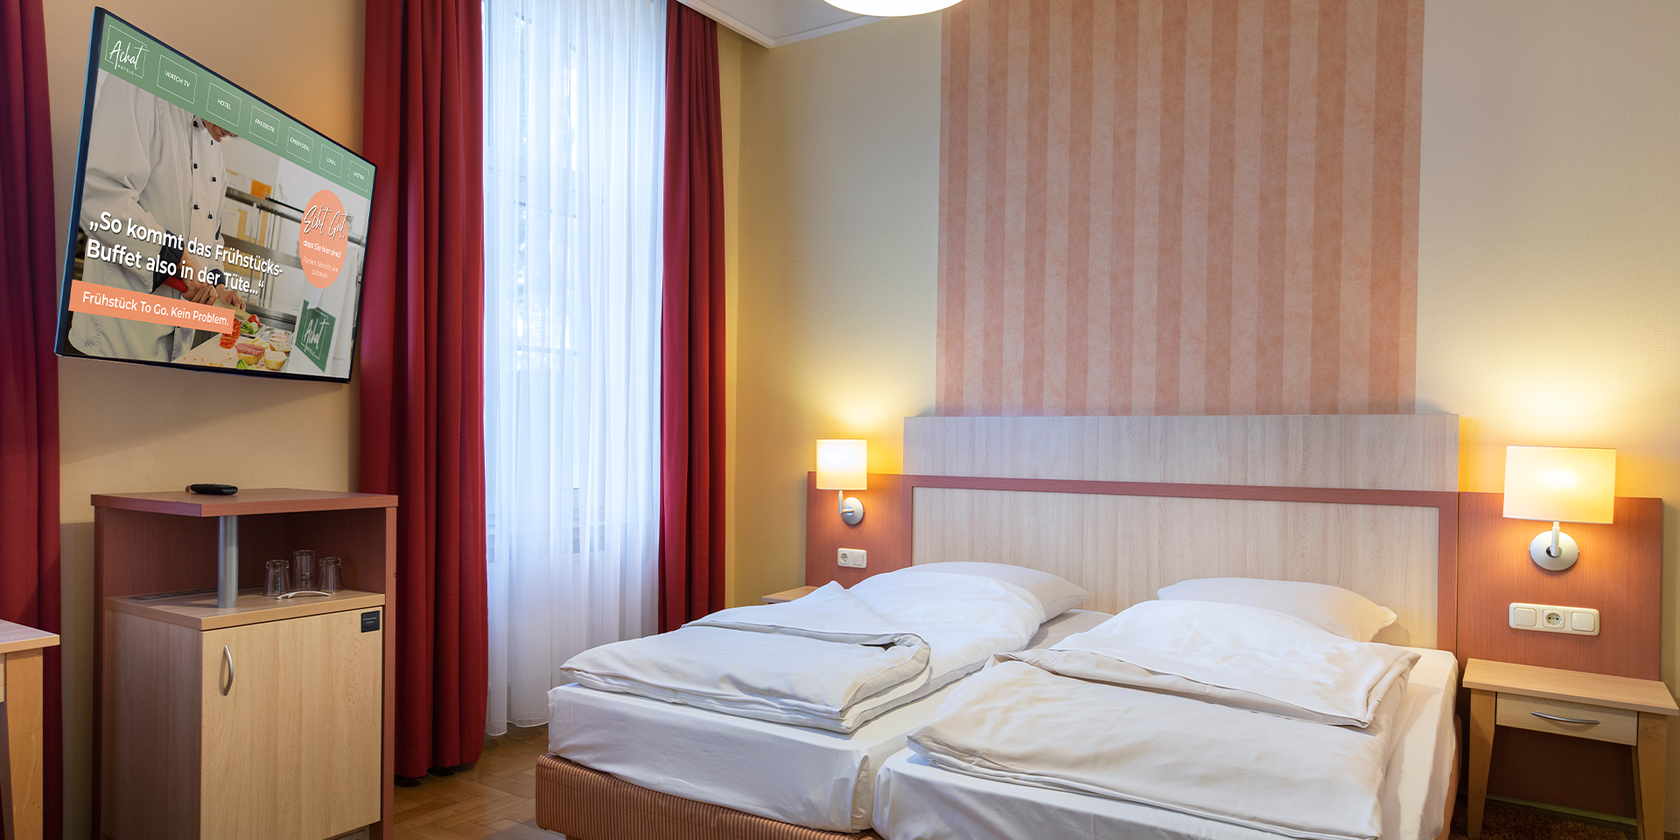 Bett im Doppelzimmer des ACHAT Hotel in Bonn am Rhein